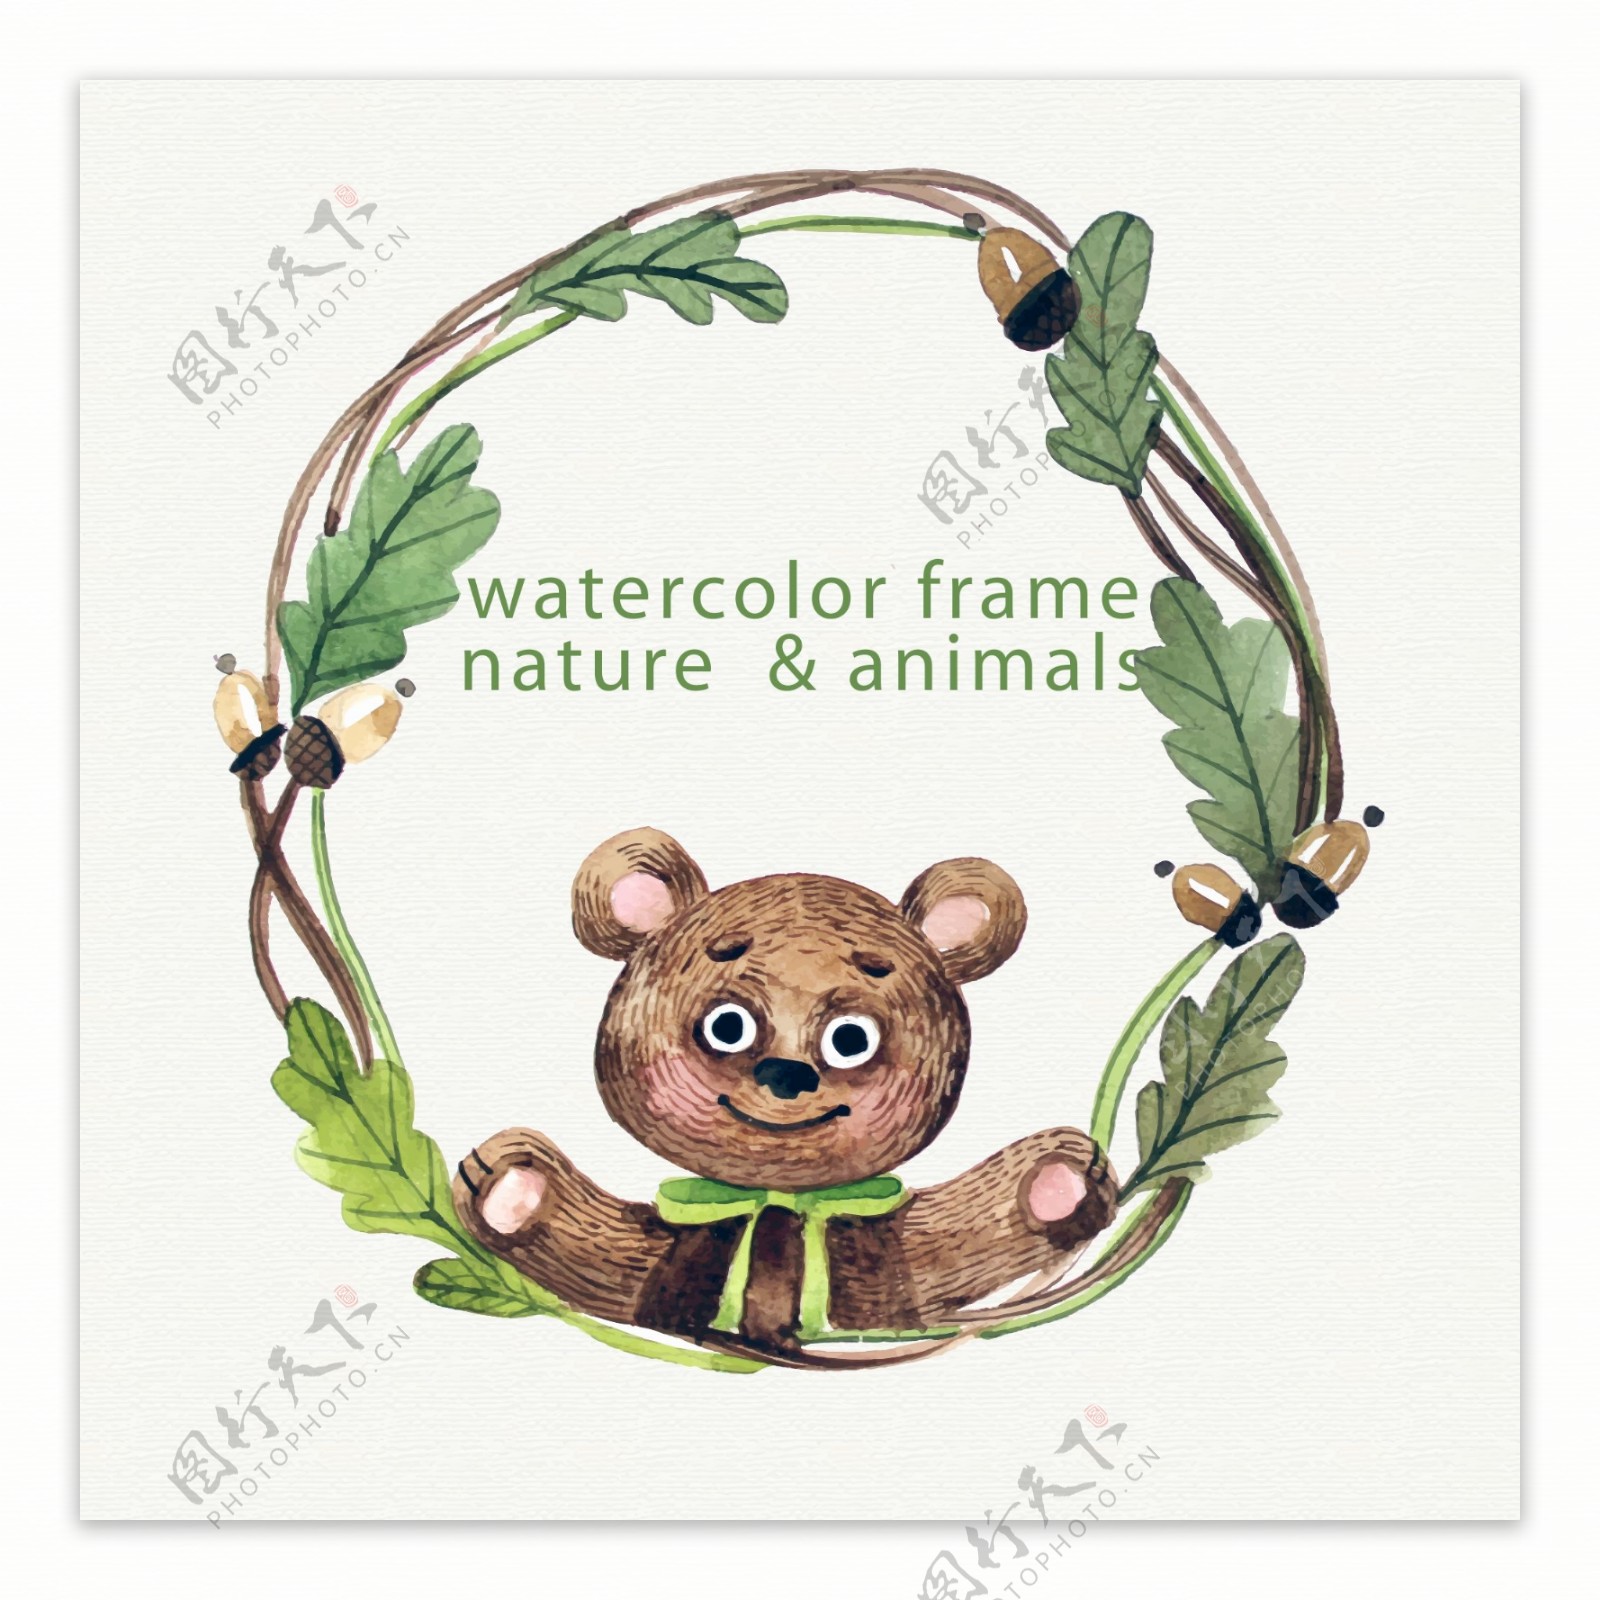 水彩绘熊和树枝边框矢量素材